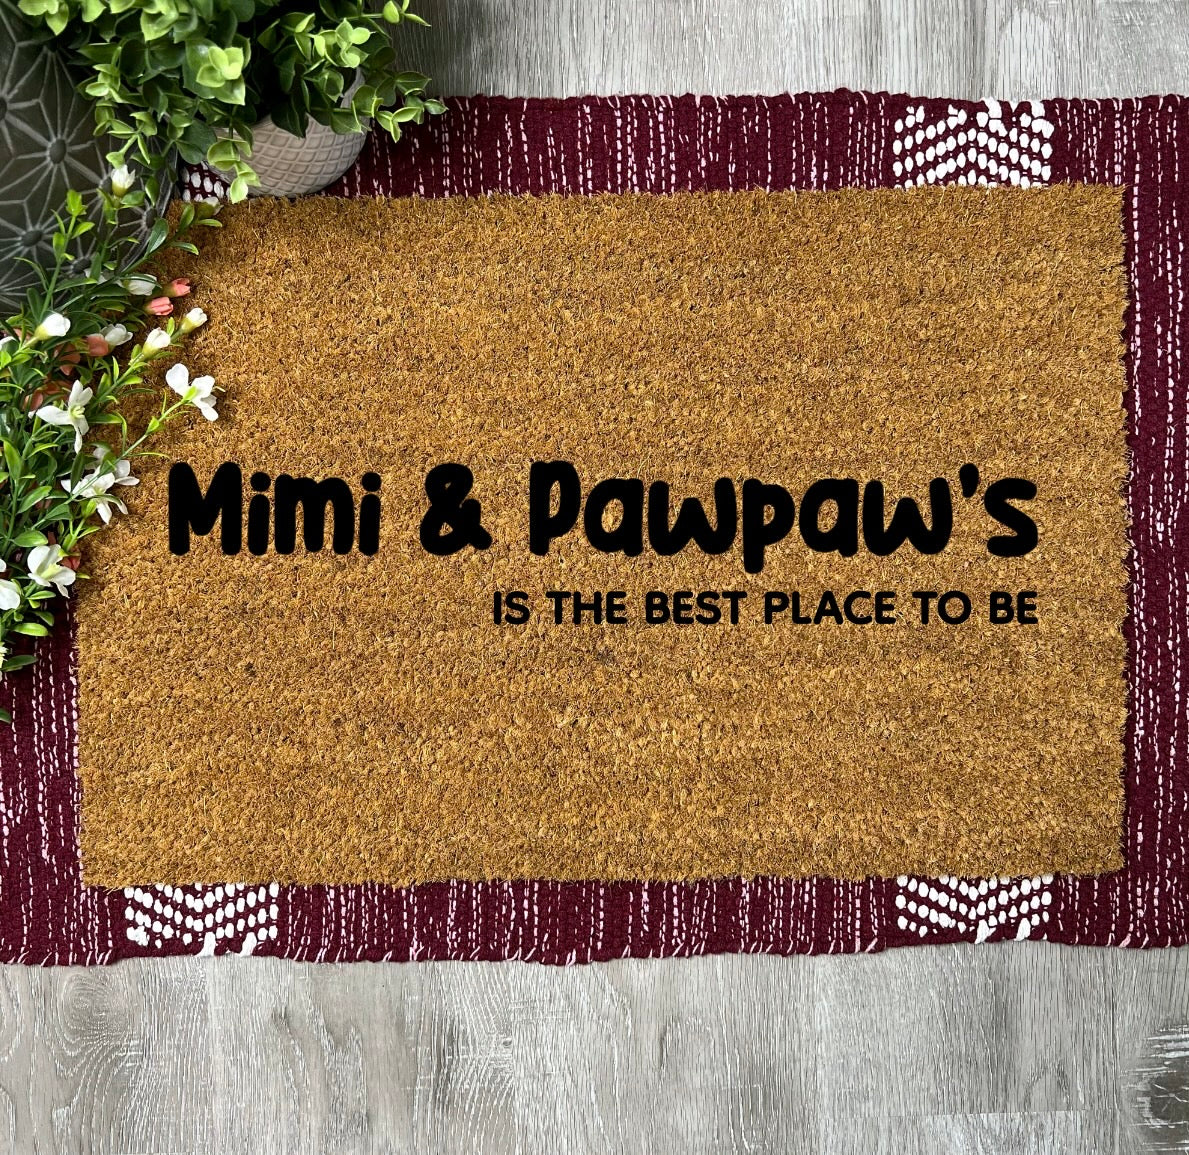 Mimi & Pawpaw’s